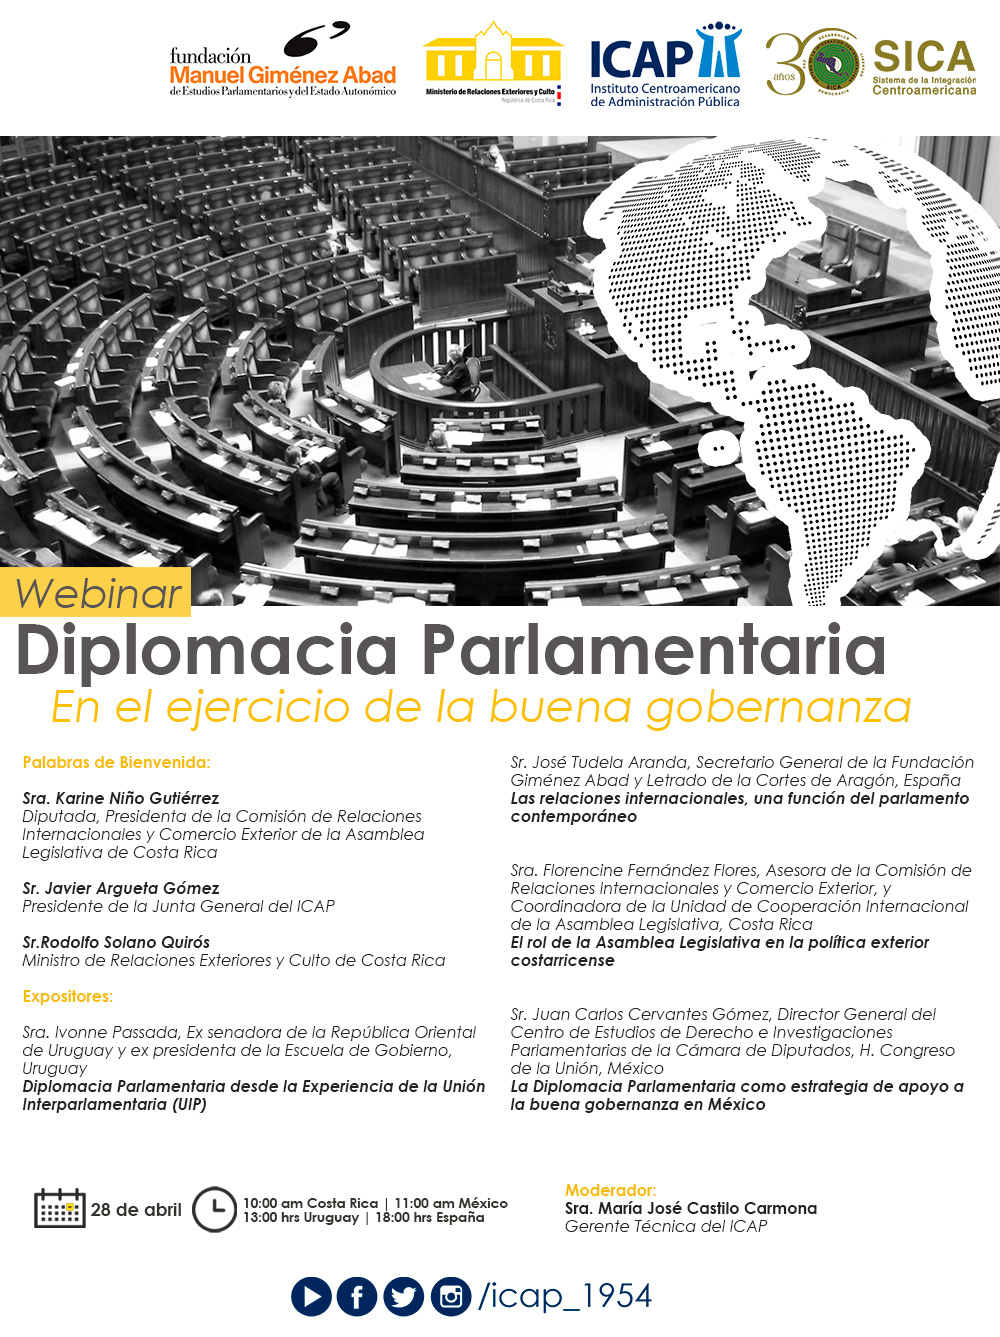 Webinar: “Diplomacia Parlamentaria: En el ejercicio de la buena gobernanza” 